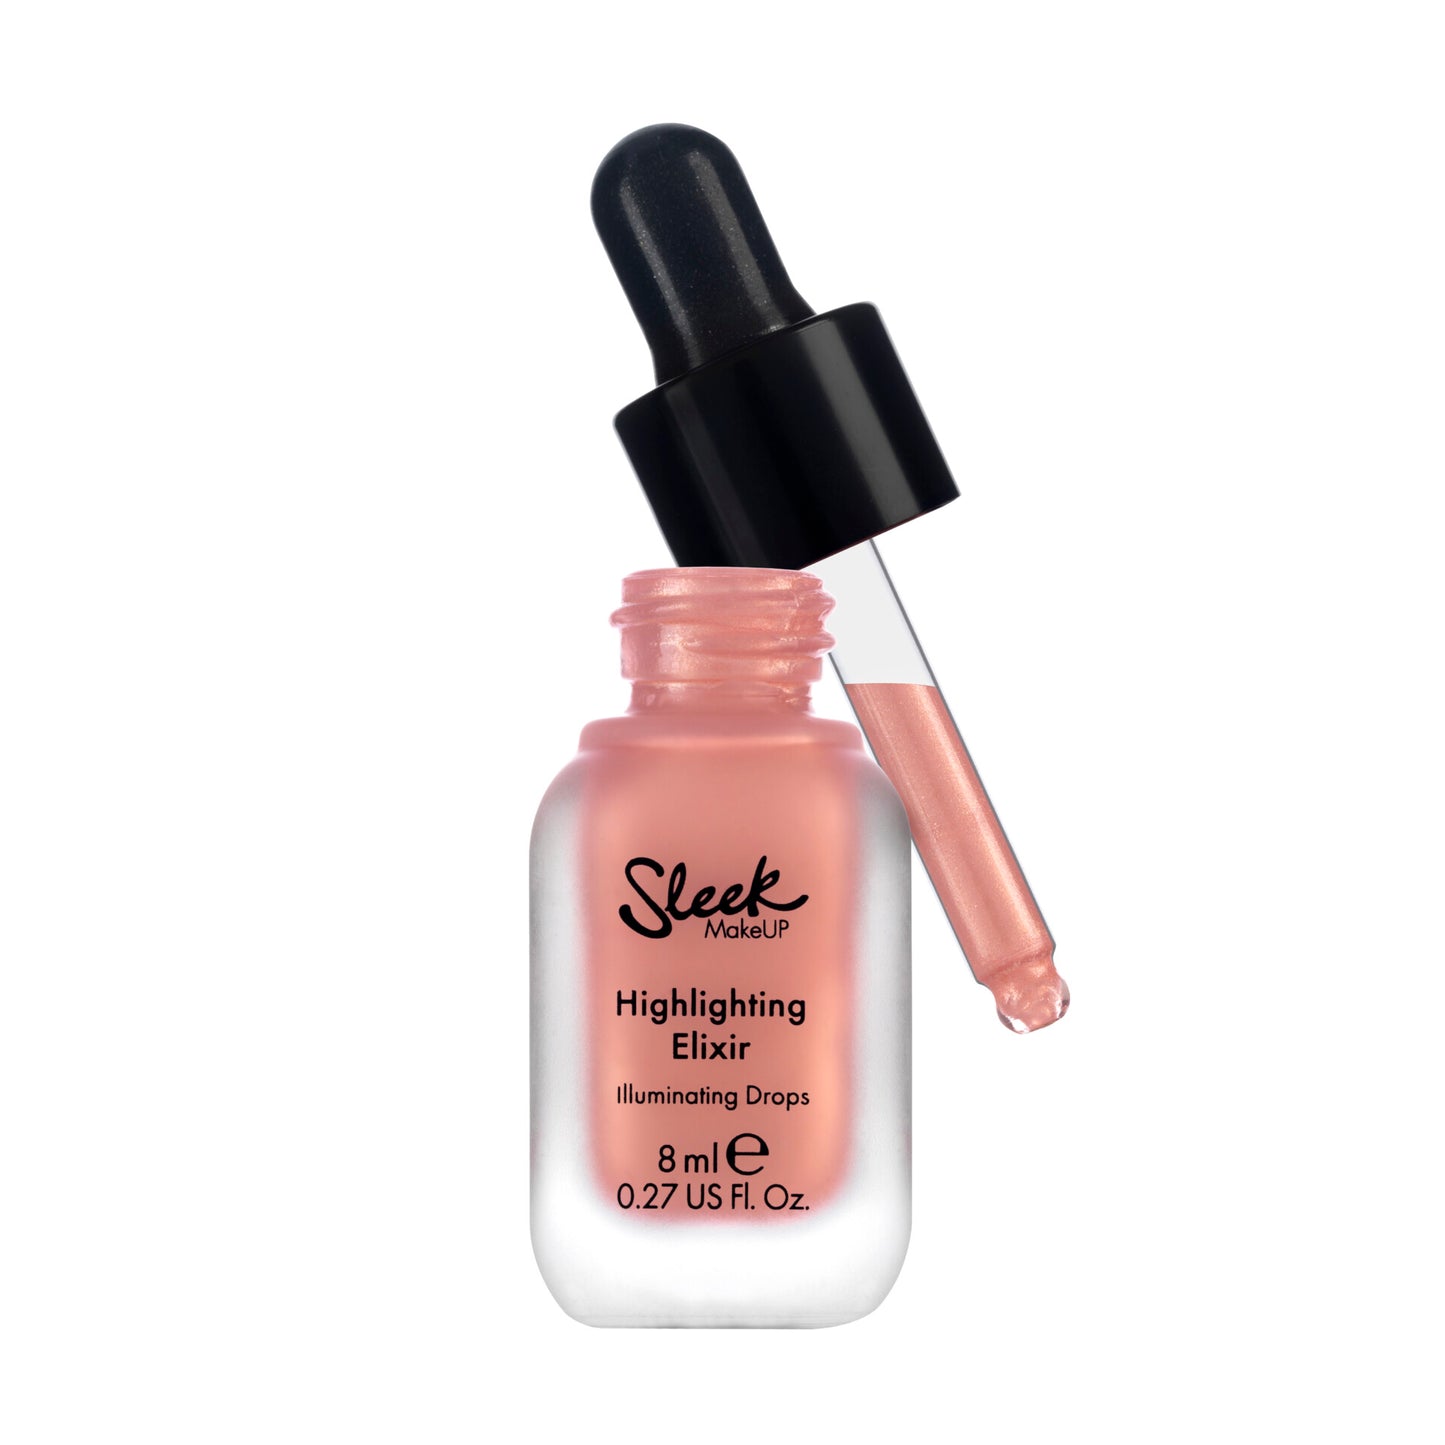 Sleek MakeUp Highlighting Elixir Illuminating Drops